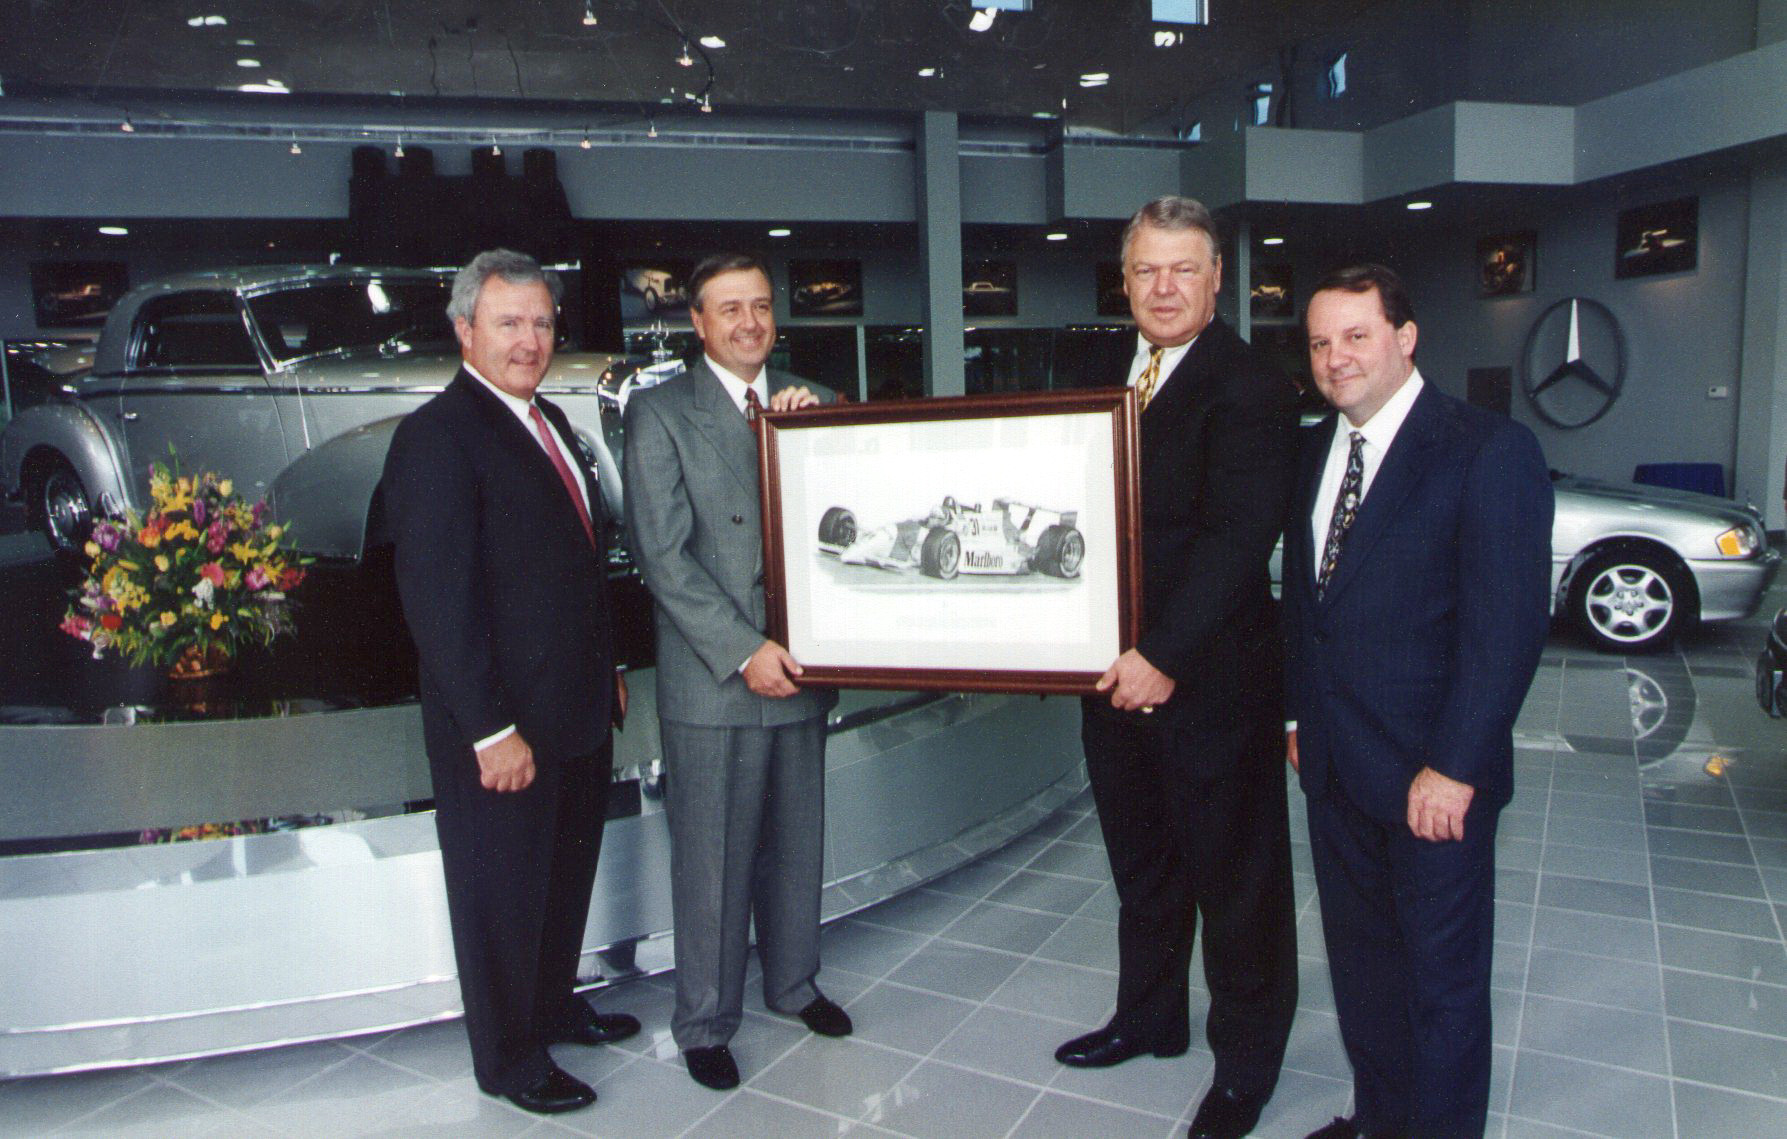 Dan Davis & Bob Snodgrass receive artwork from Mercedes-Benz Regional Office